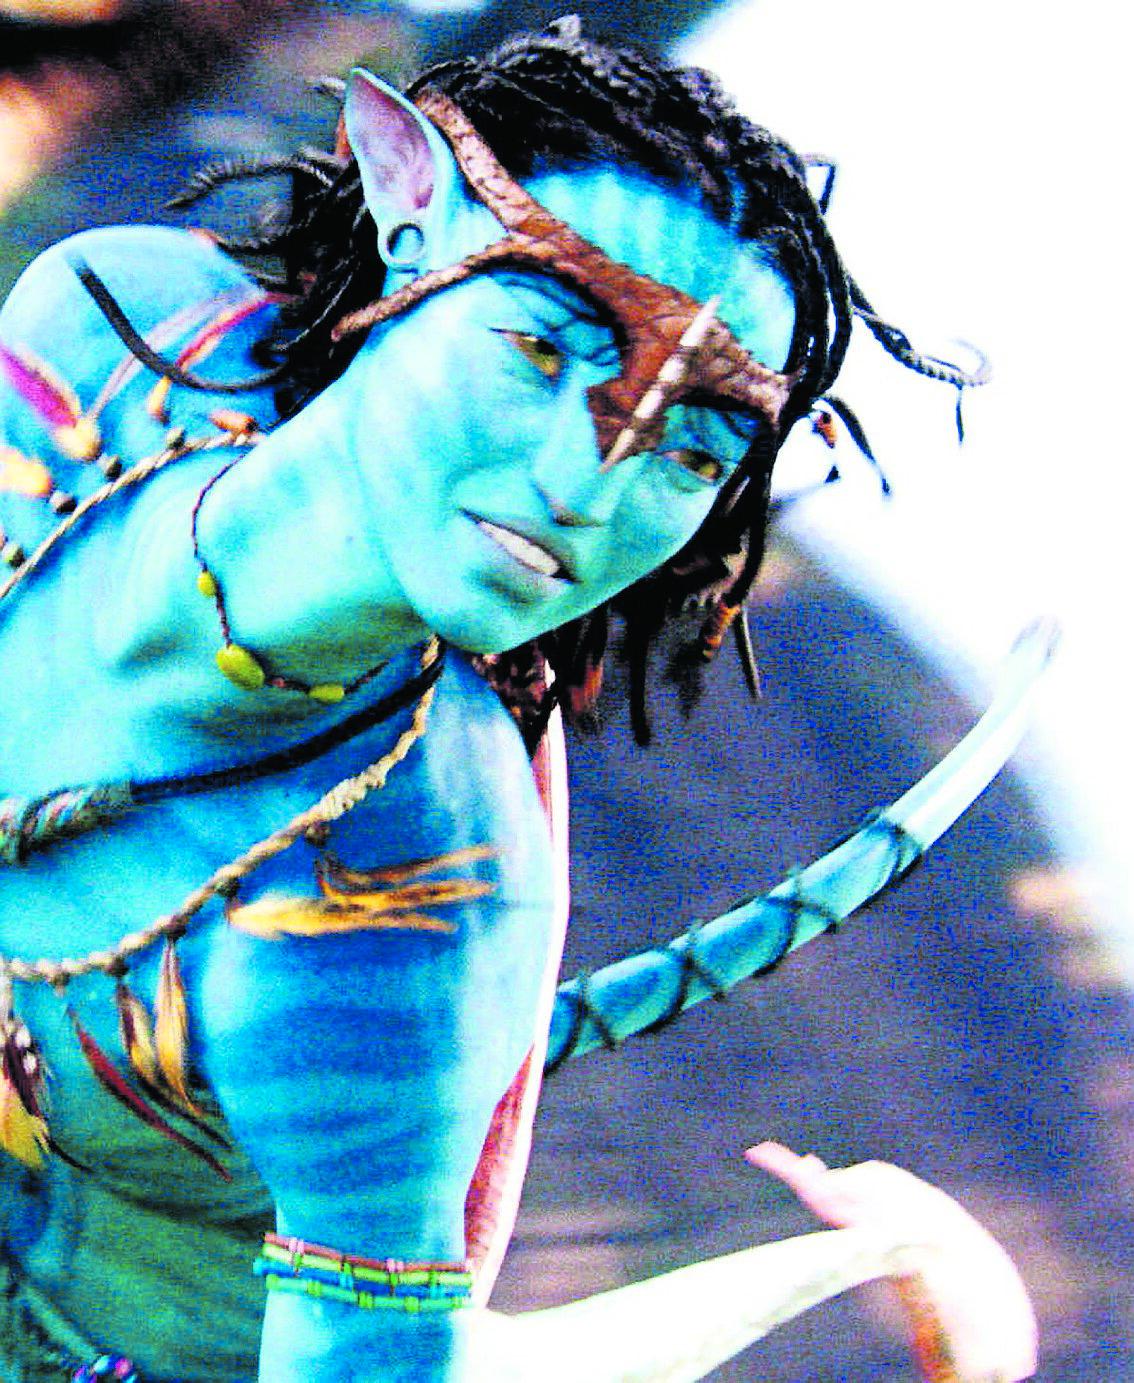 Neytiri, spelad av Zoe Saldana, är en av karaktärerna i ”Avatar”.